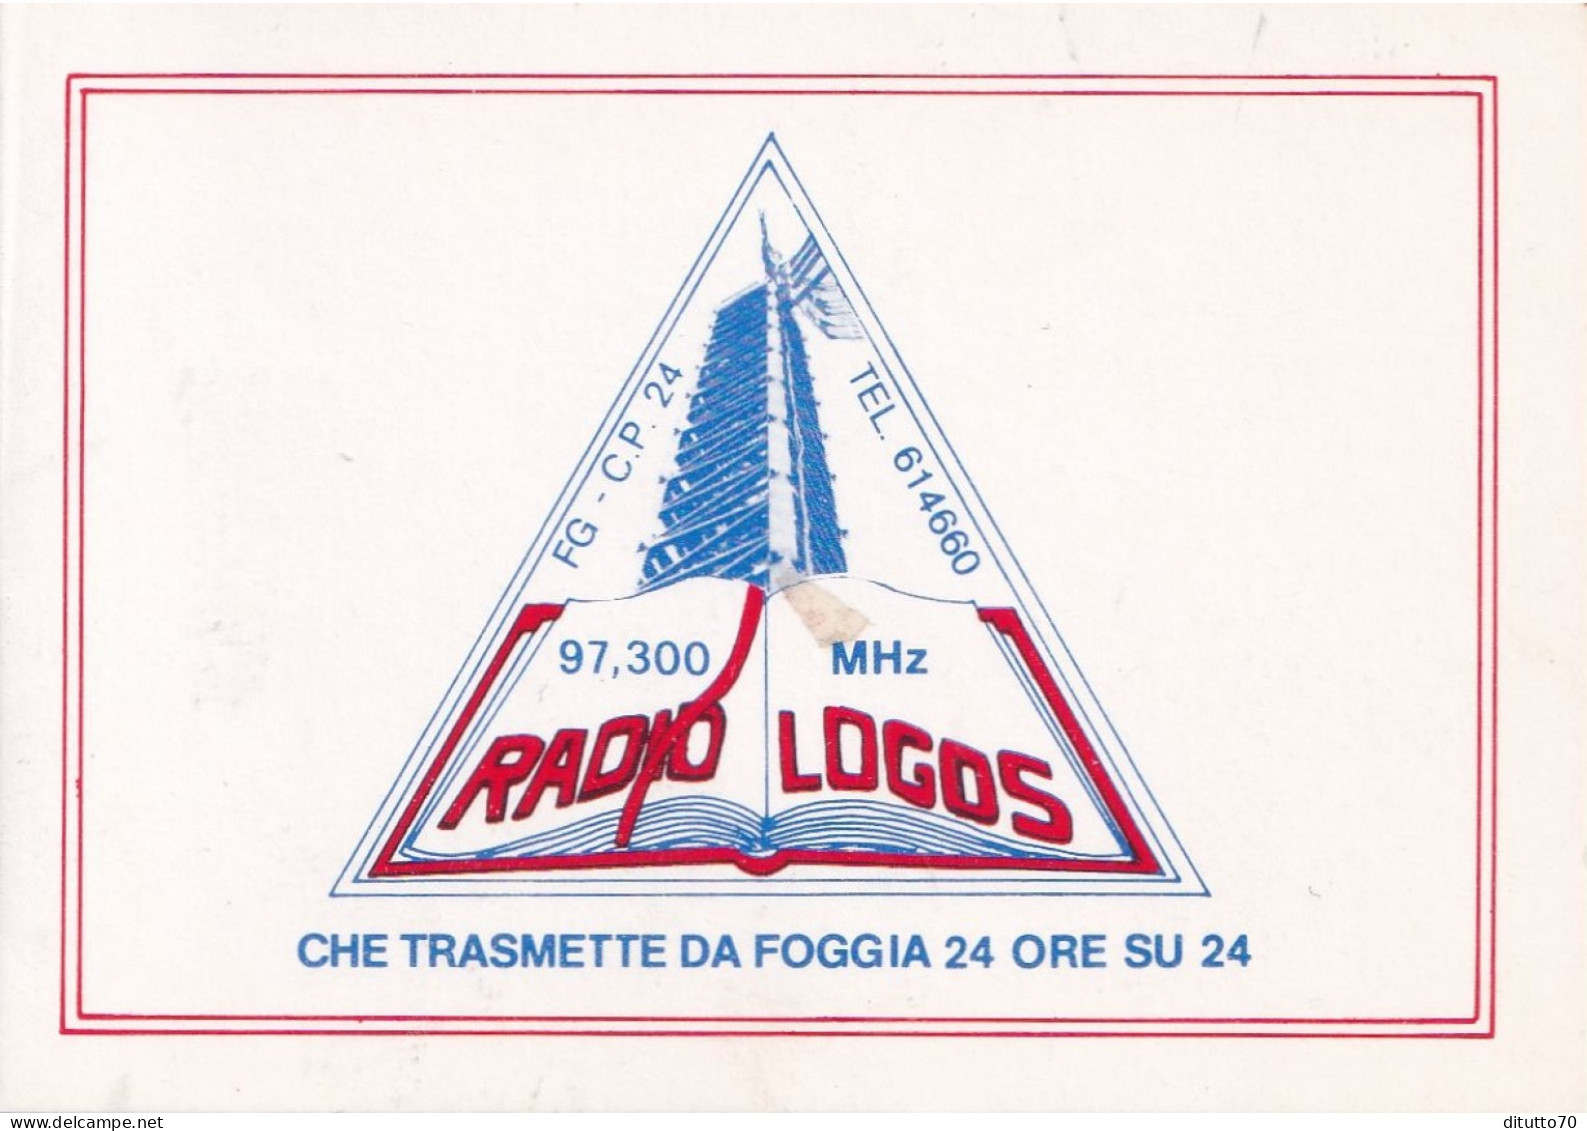 Calendarietto - RADIO LOGOS - Foggia - Anno 1990 - Small : 1981-90